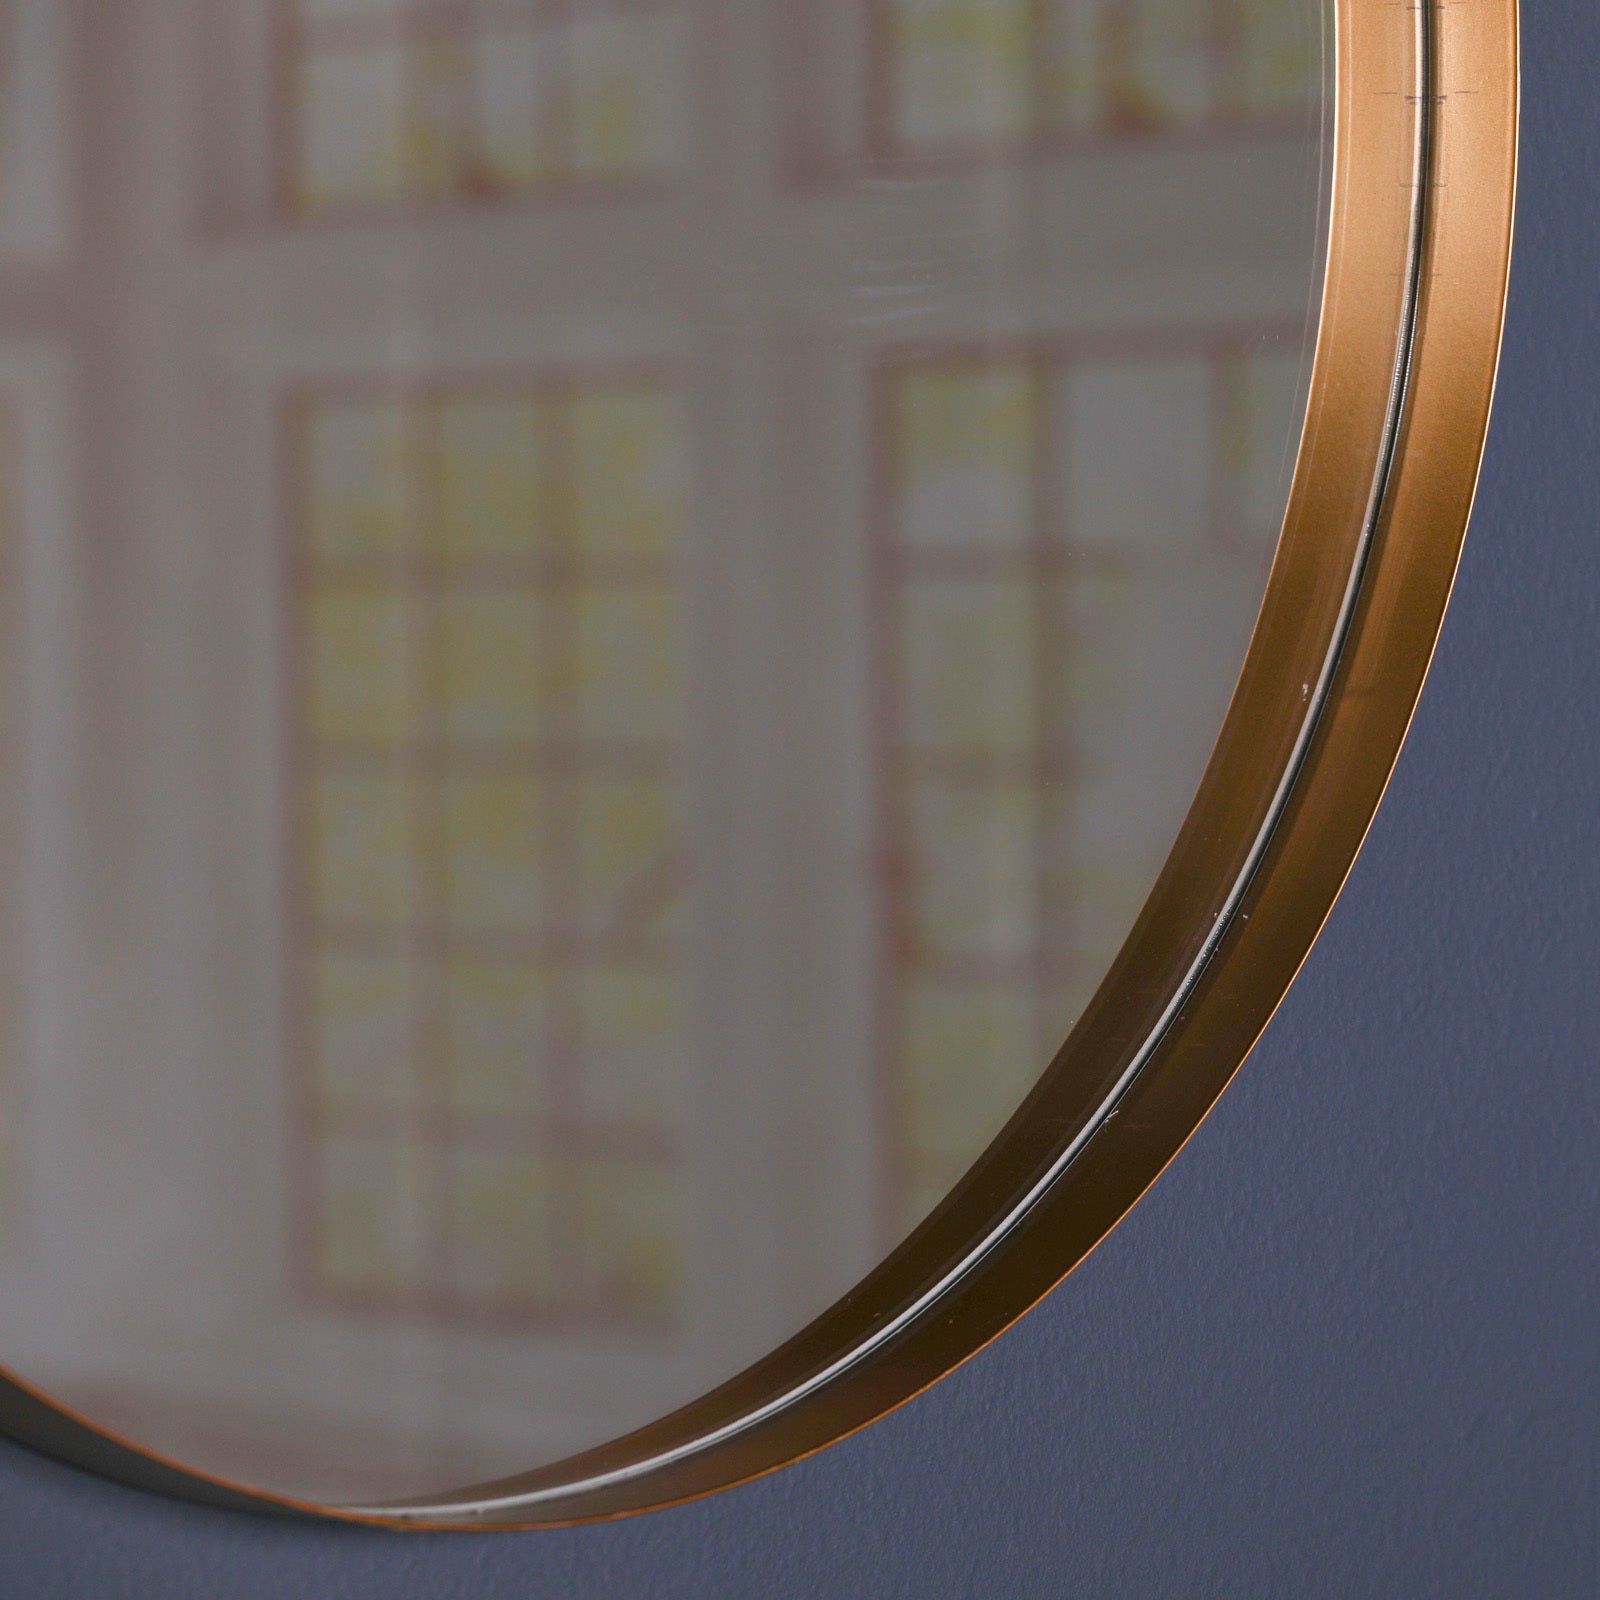 50cm Gold Round Wall Mirror